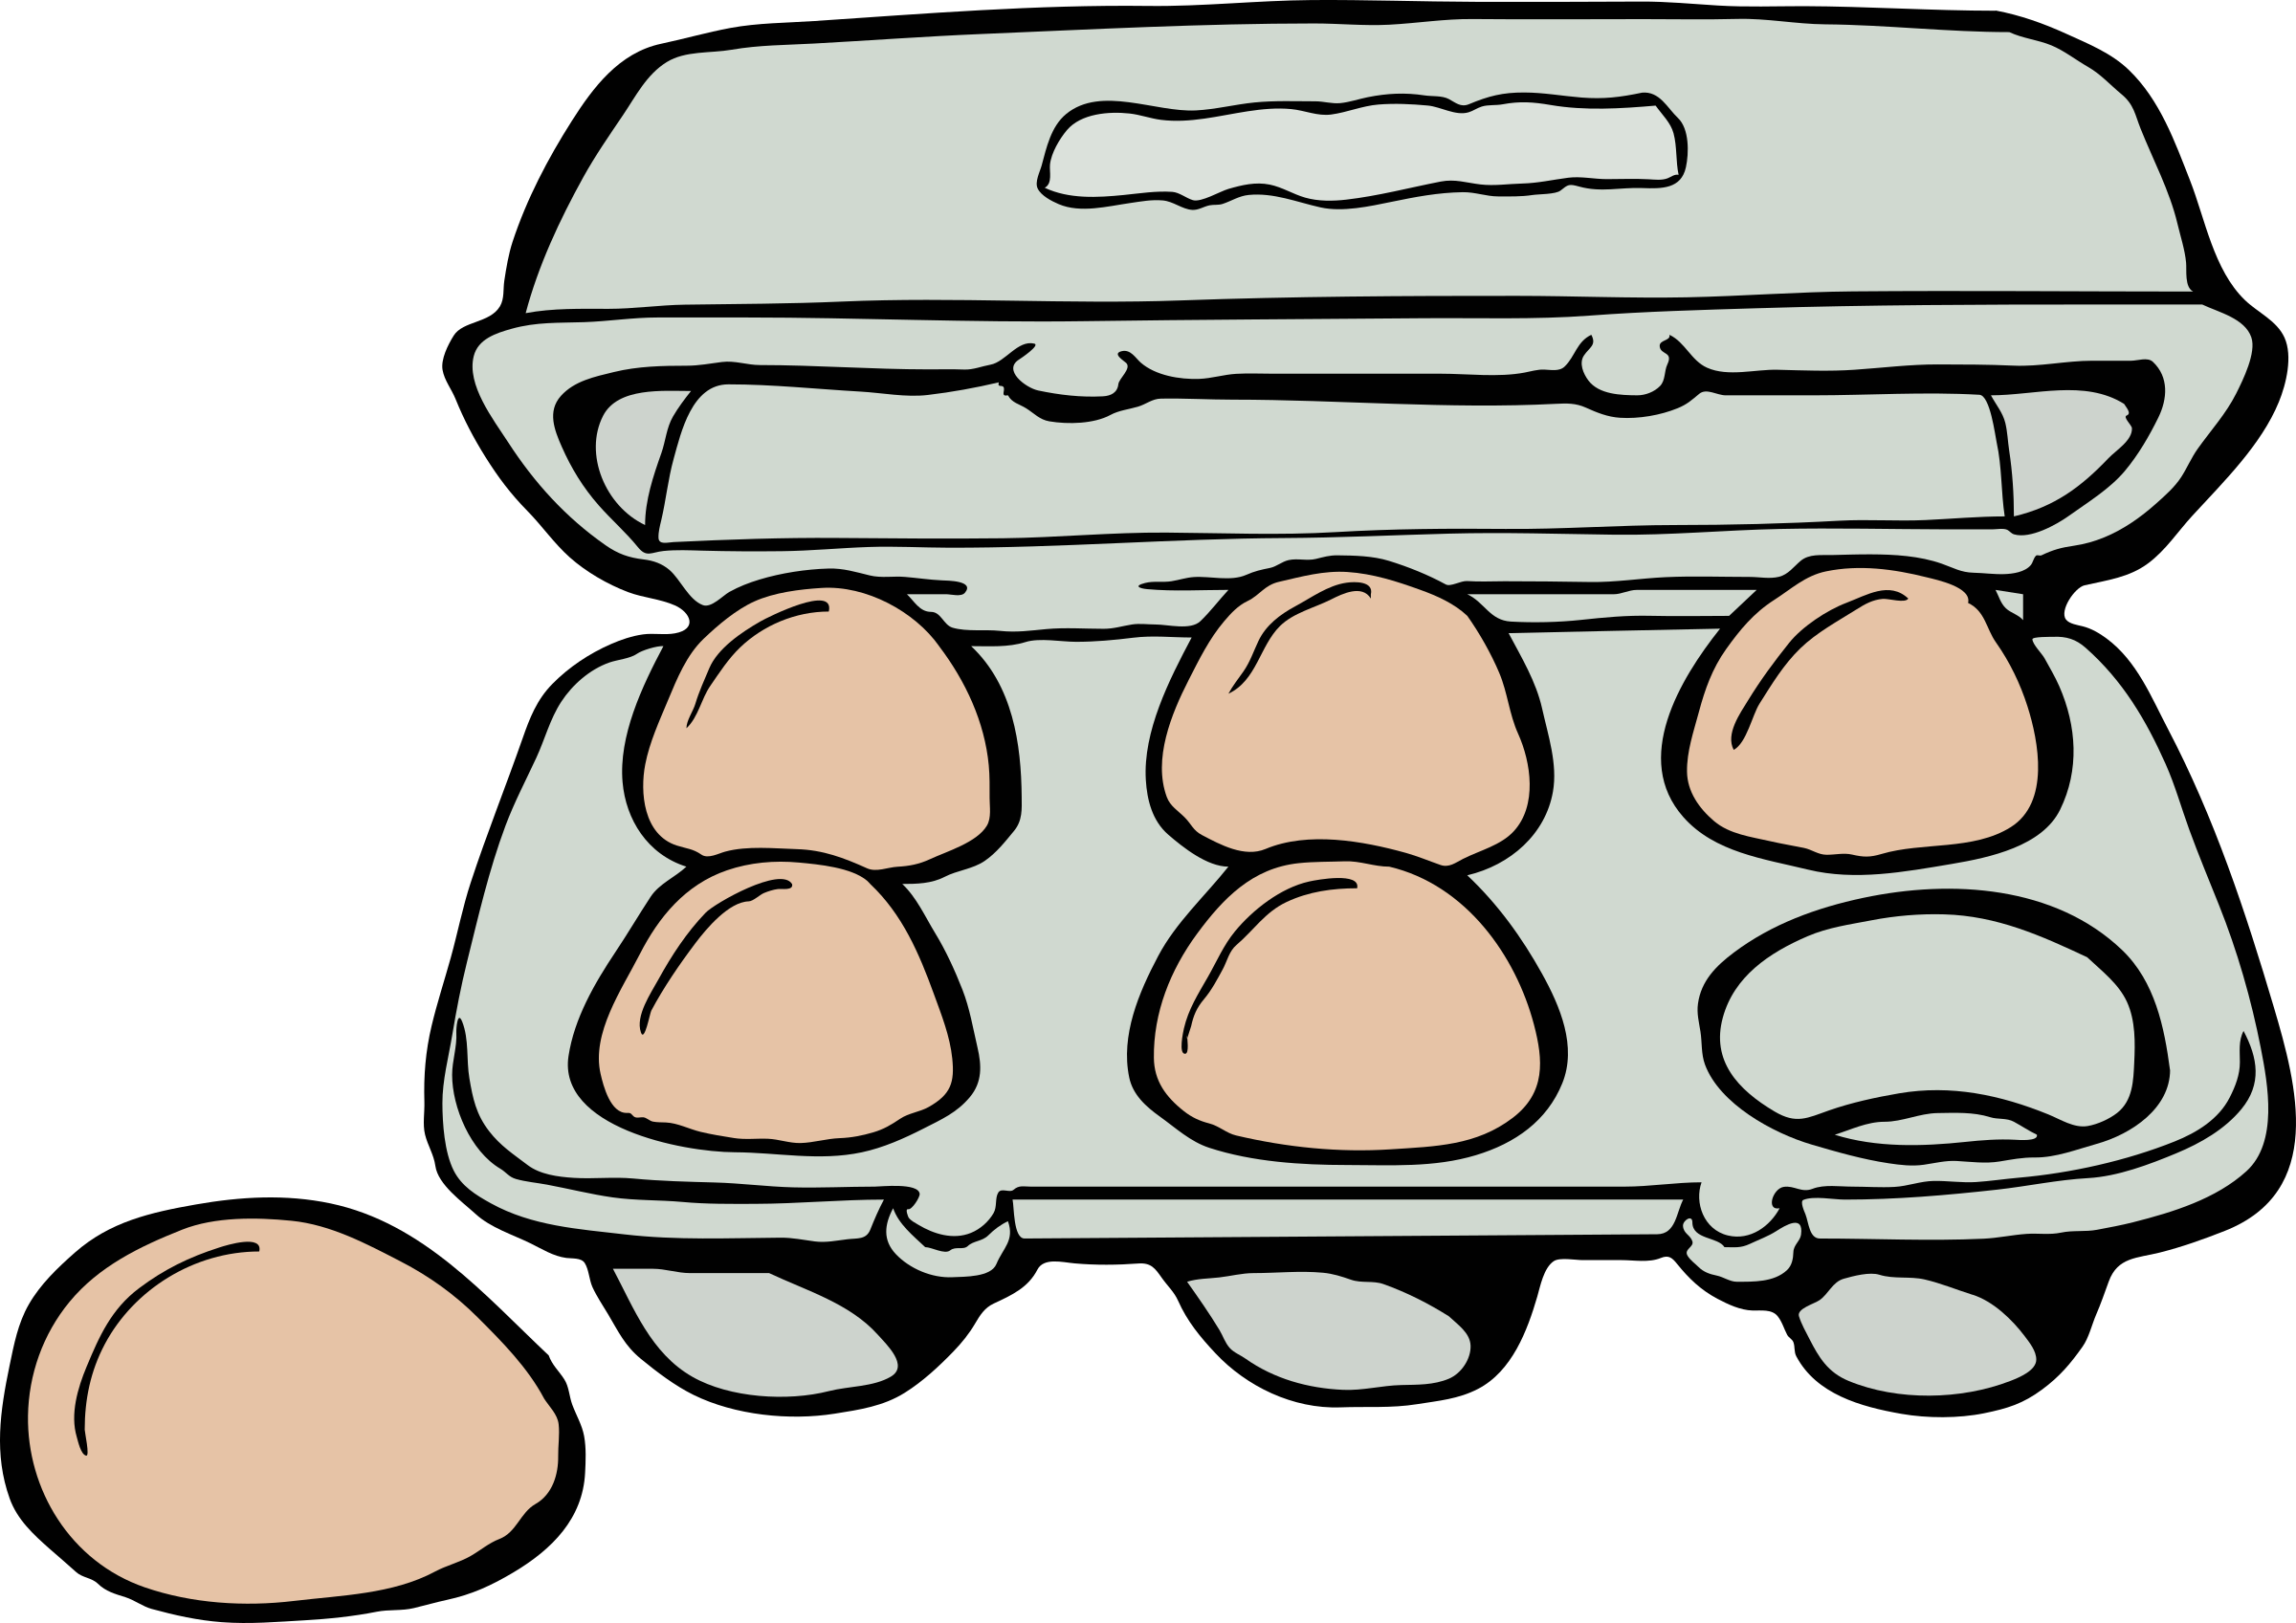 Eggs six